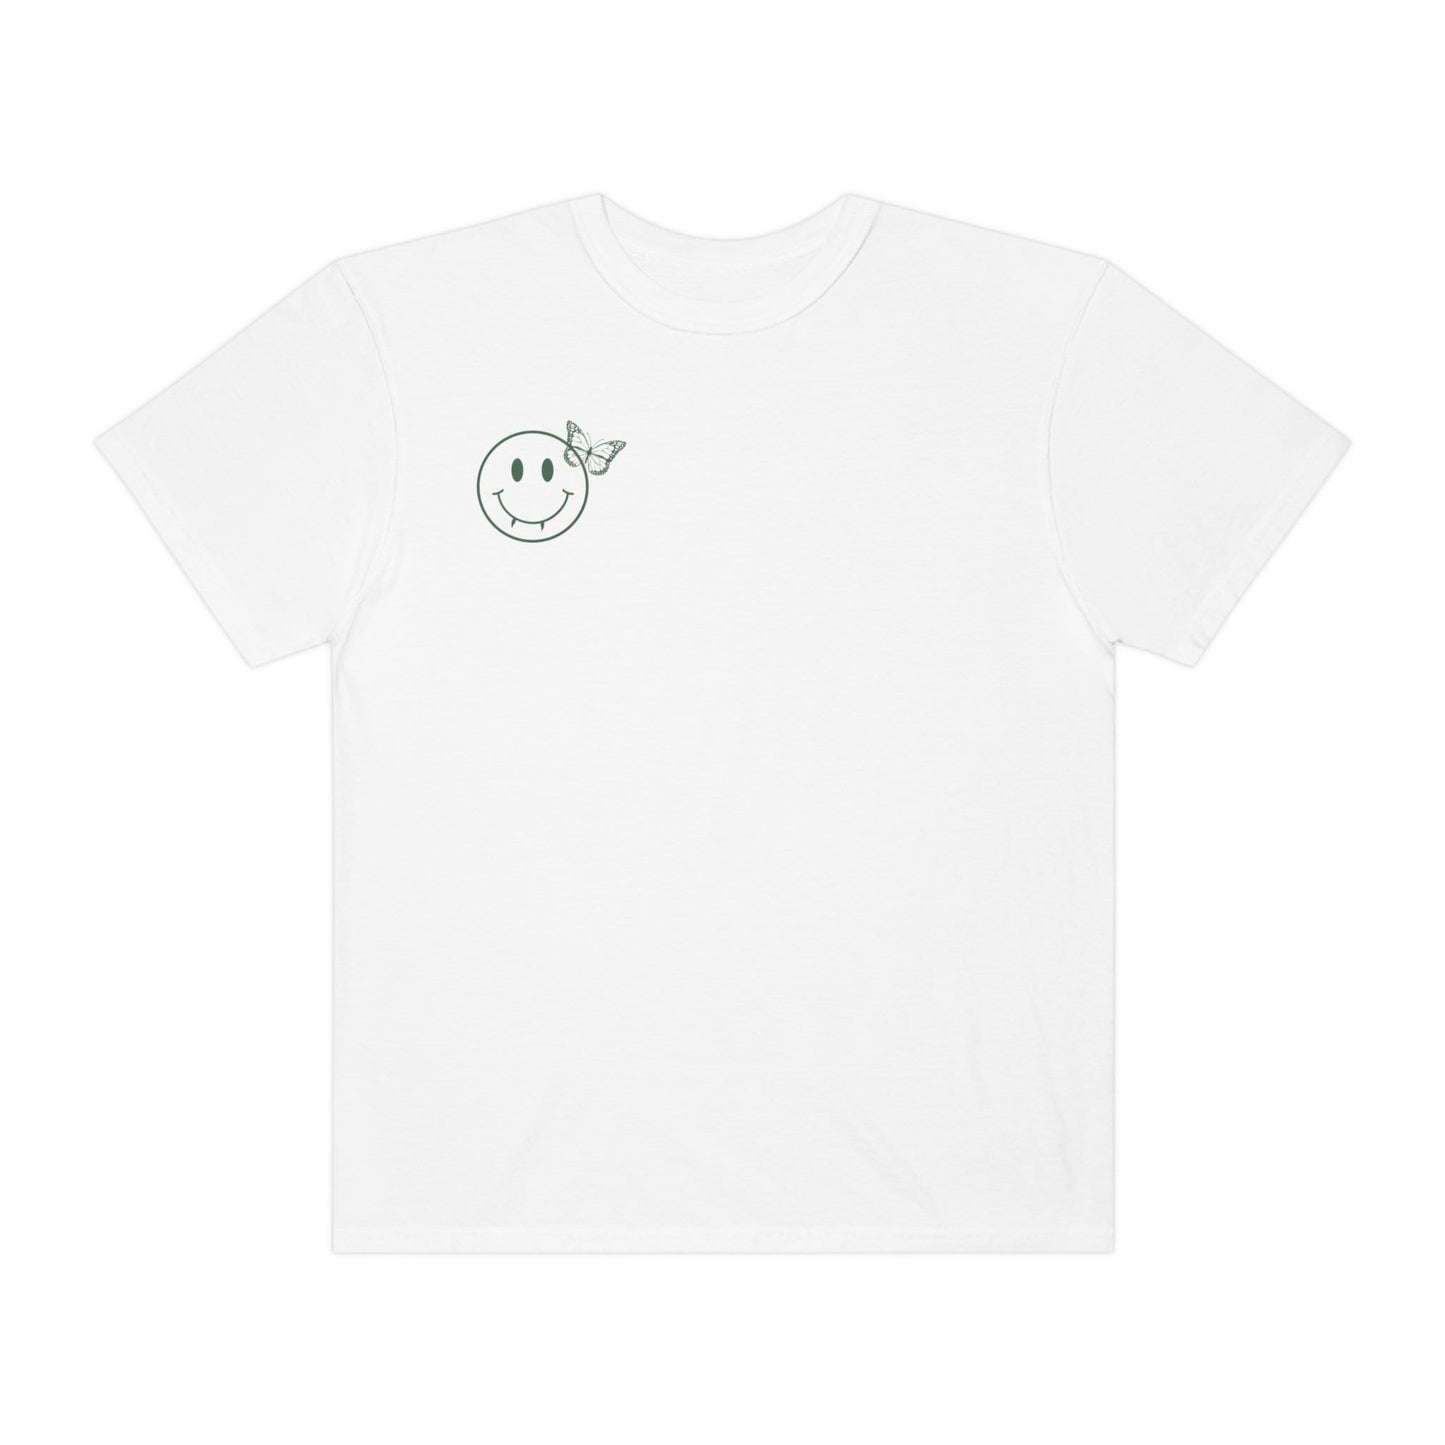 TVD Shirt, Stefan Salvatore Shirt, VSCO shirt, Team Stefan Shirt, Mystic Falls shirt, TVD fan gift, Tvd merch, tvd apparel